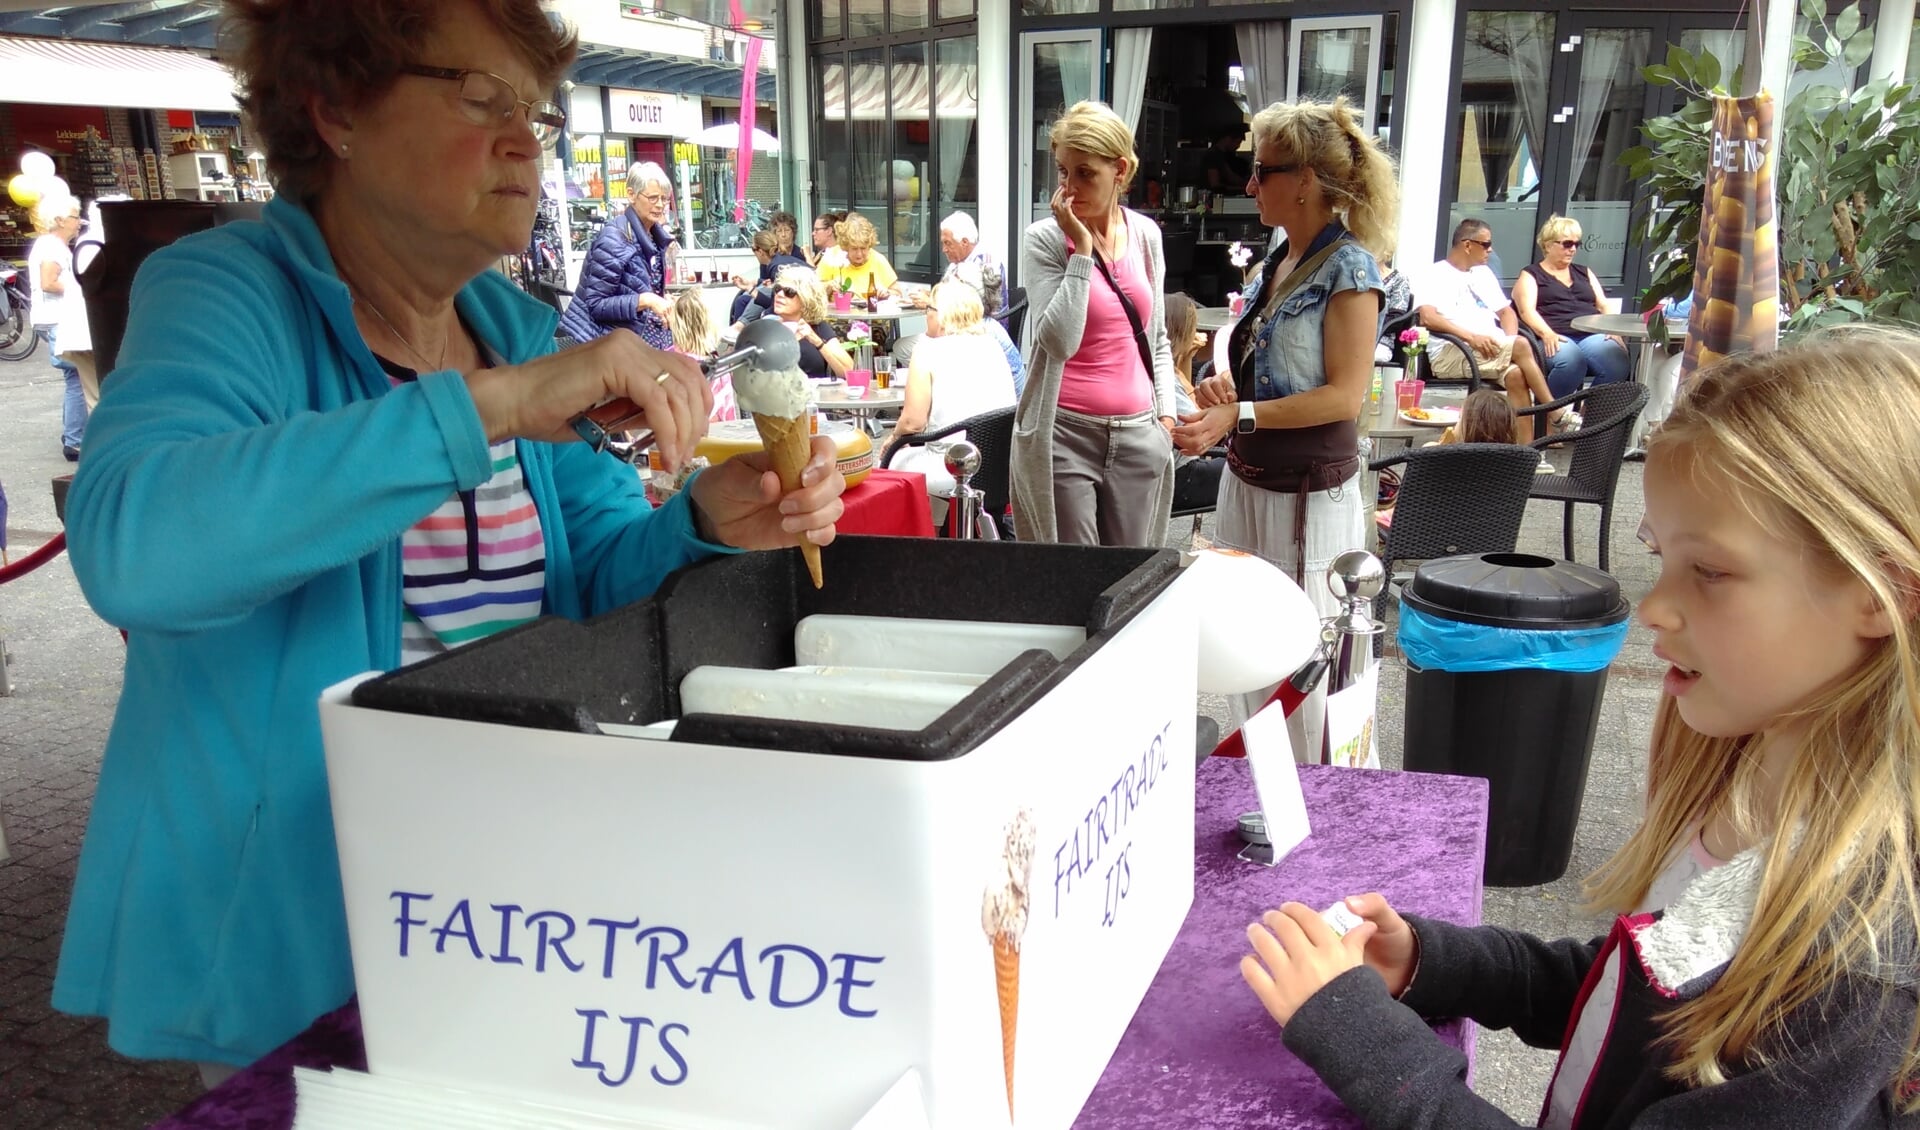 Fairtrade ijs proeven? Kom op 11 mei naar de Hamershof!